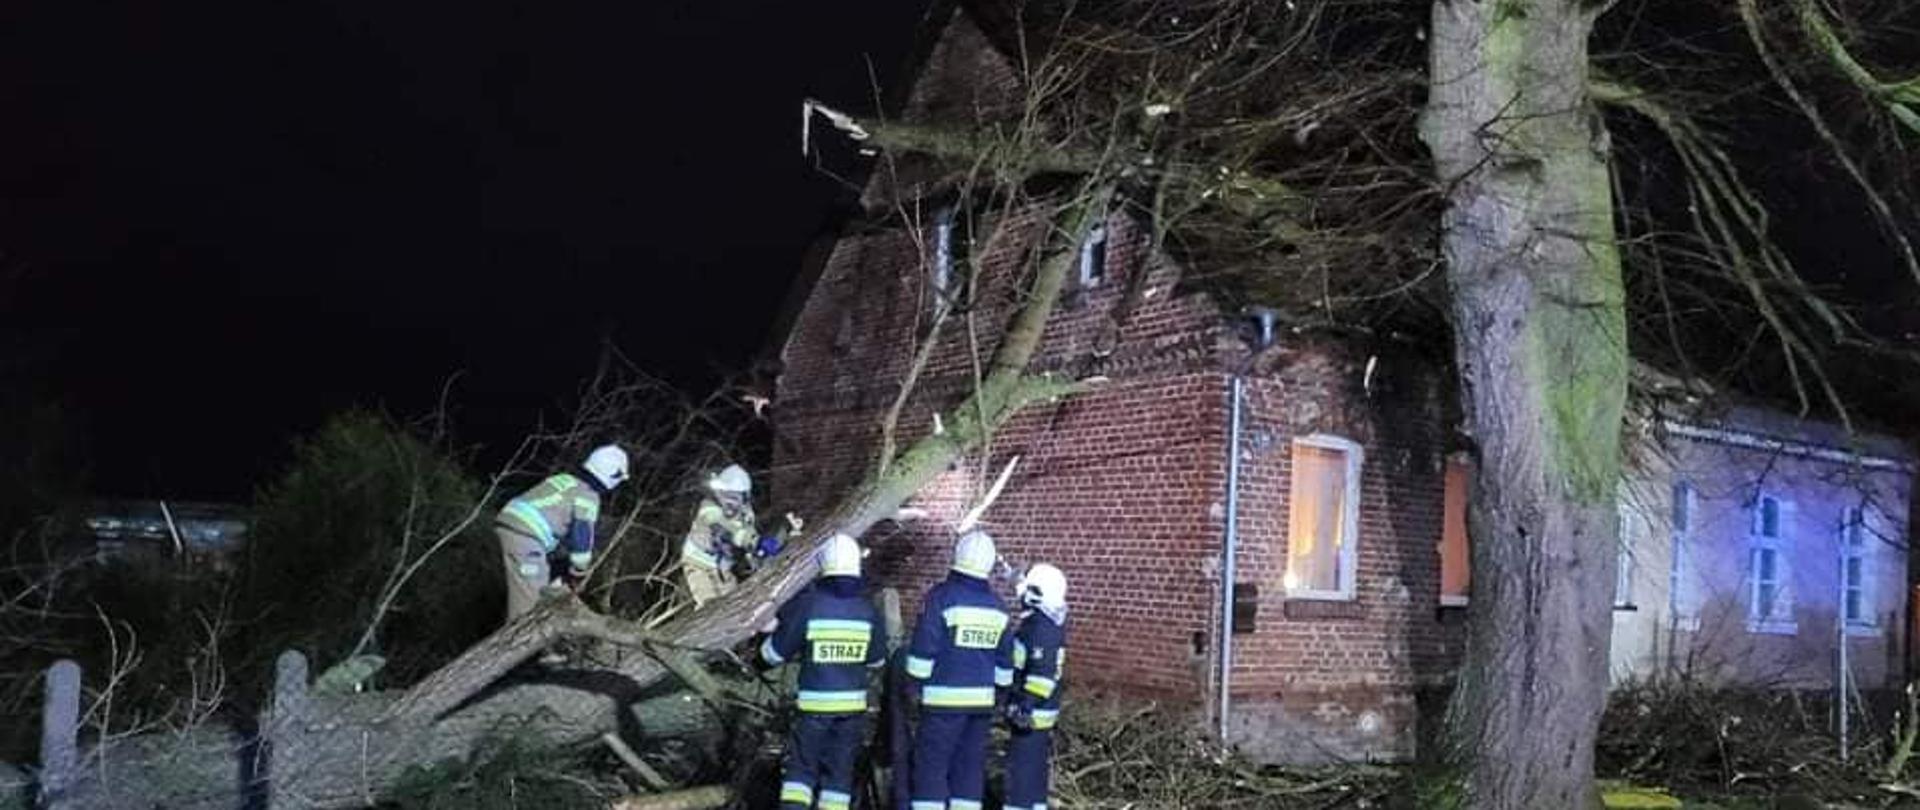 Na zdjęciu widzimy drzewo, które przewróciło się na dach domu oraz grupę strażaków pracujących nad usunięciem zagrożenia.